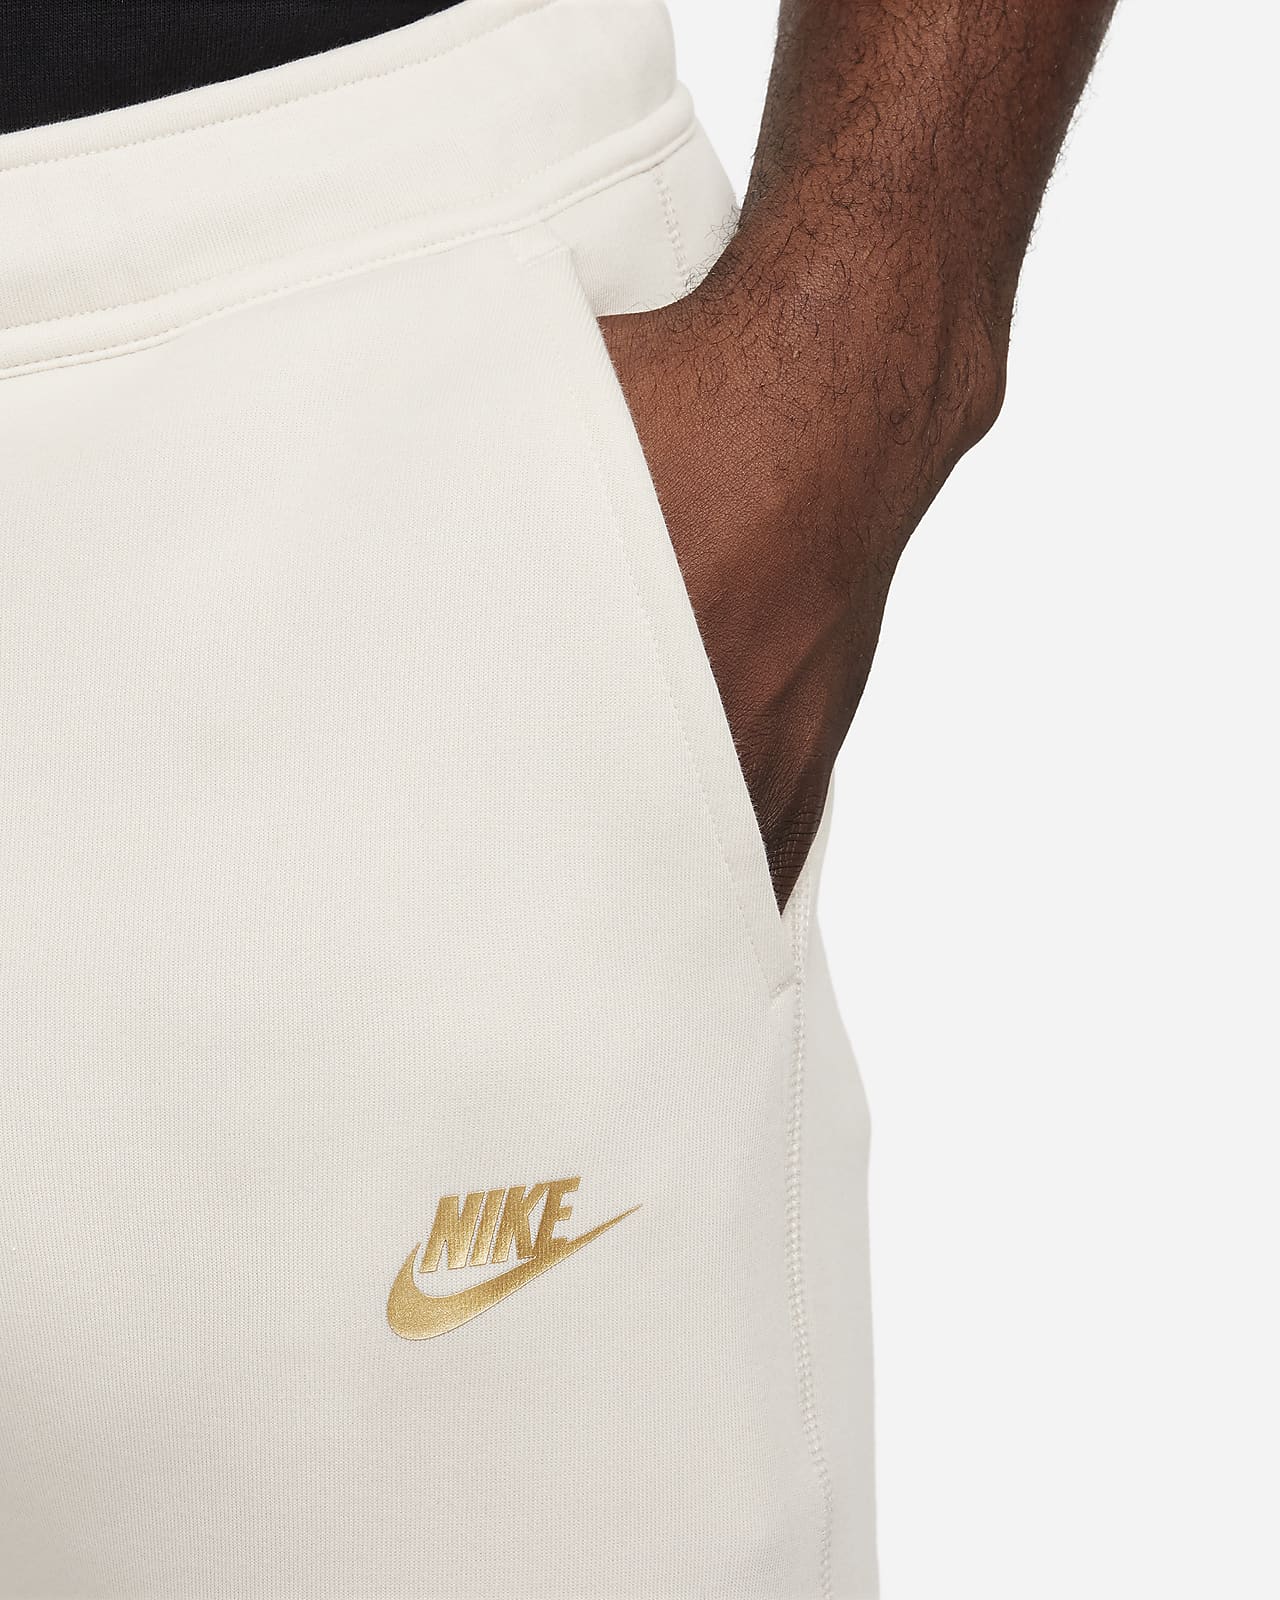 Nike Sportswear Tech Fleece Pant Light Bone/Black Men's - US